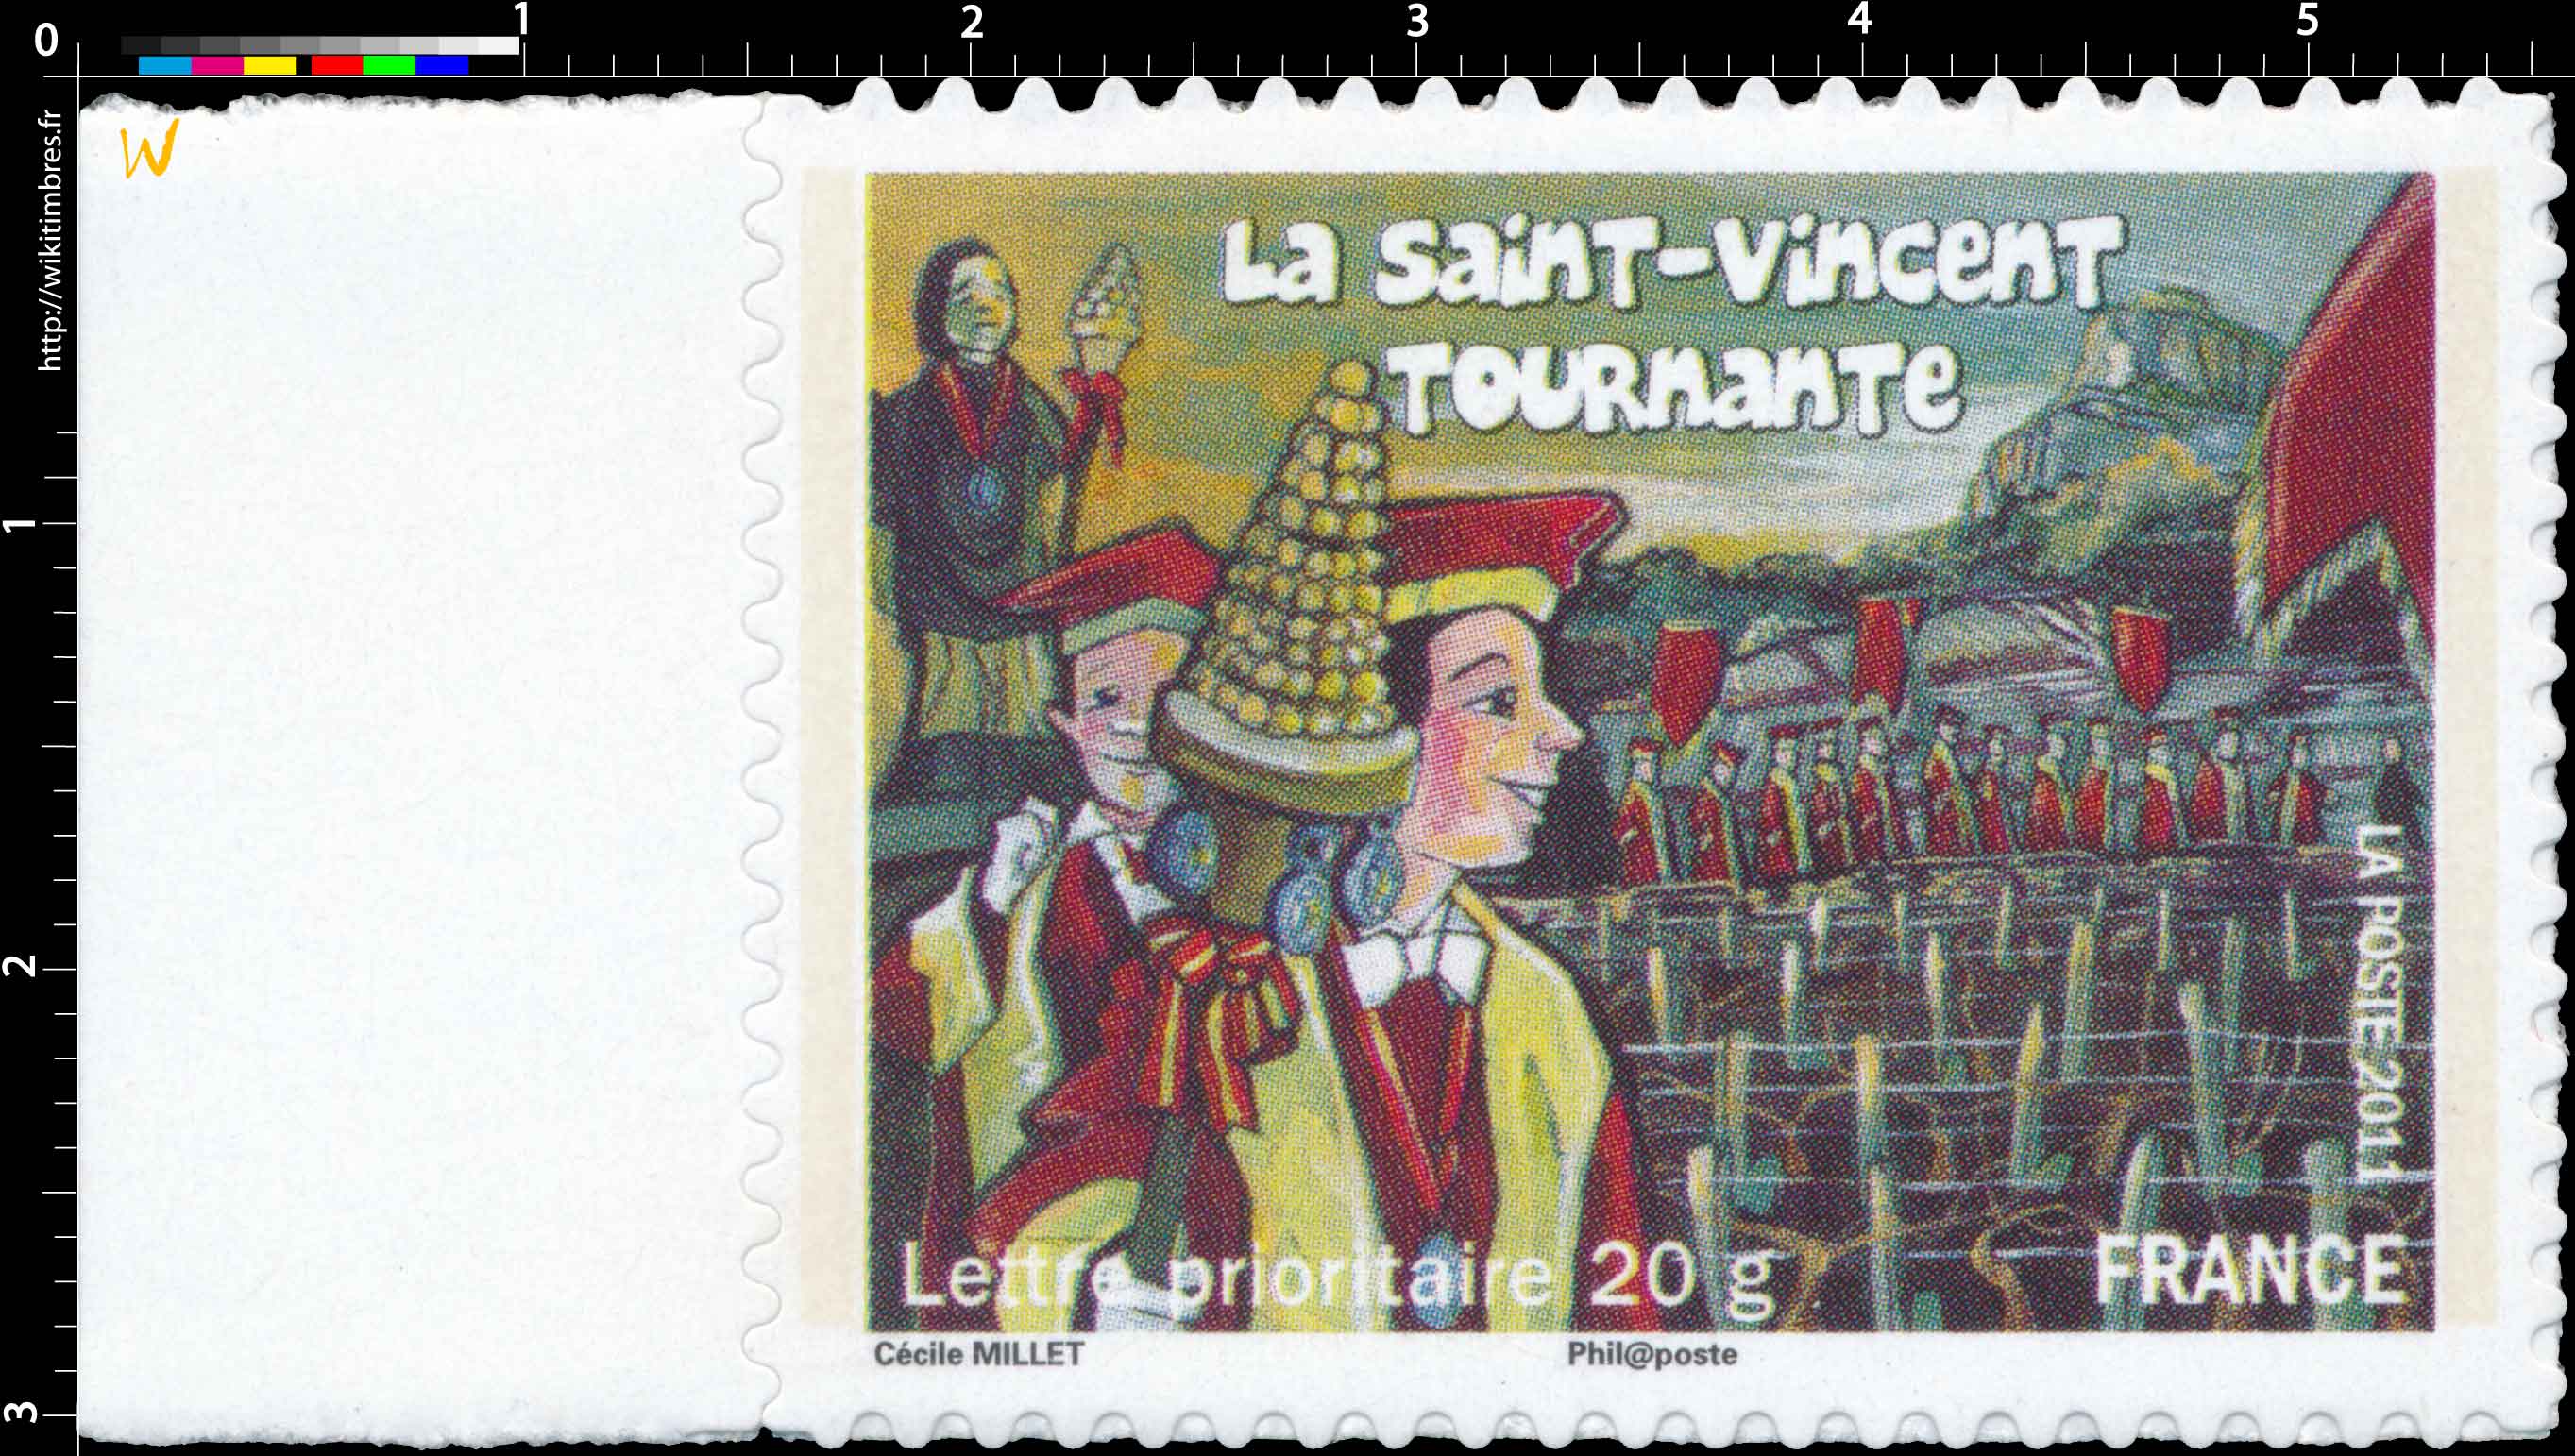 2011 La Saint-Vincent tournante